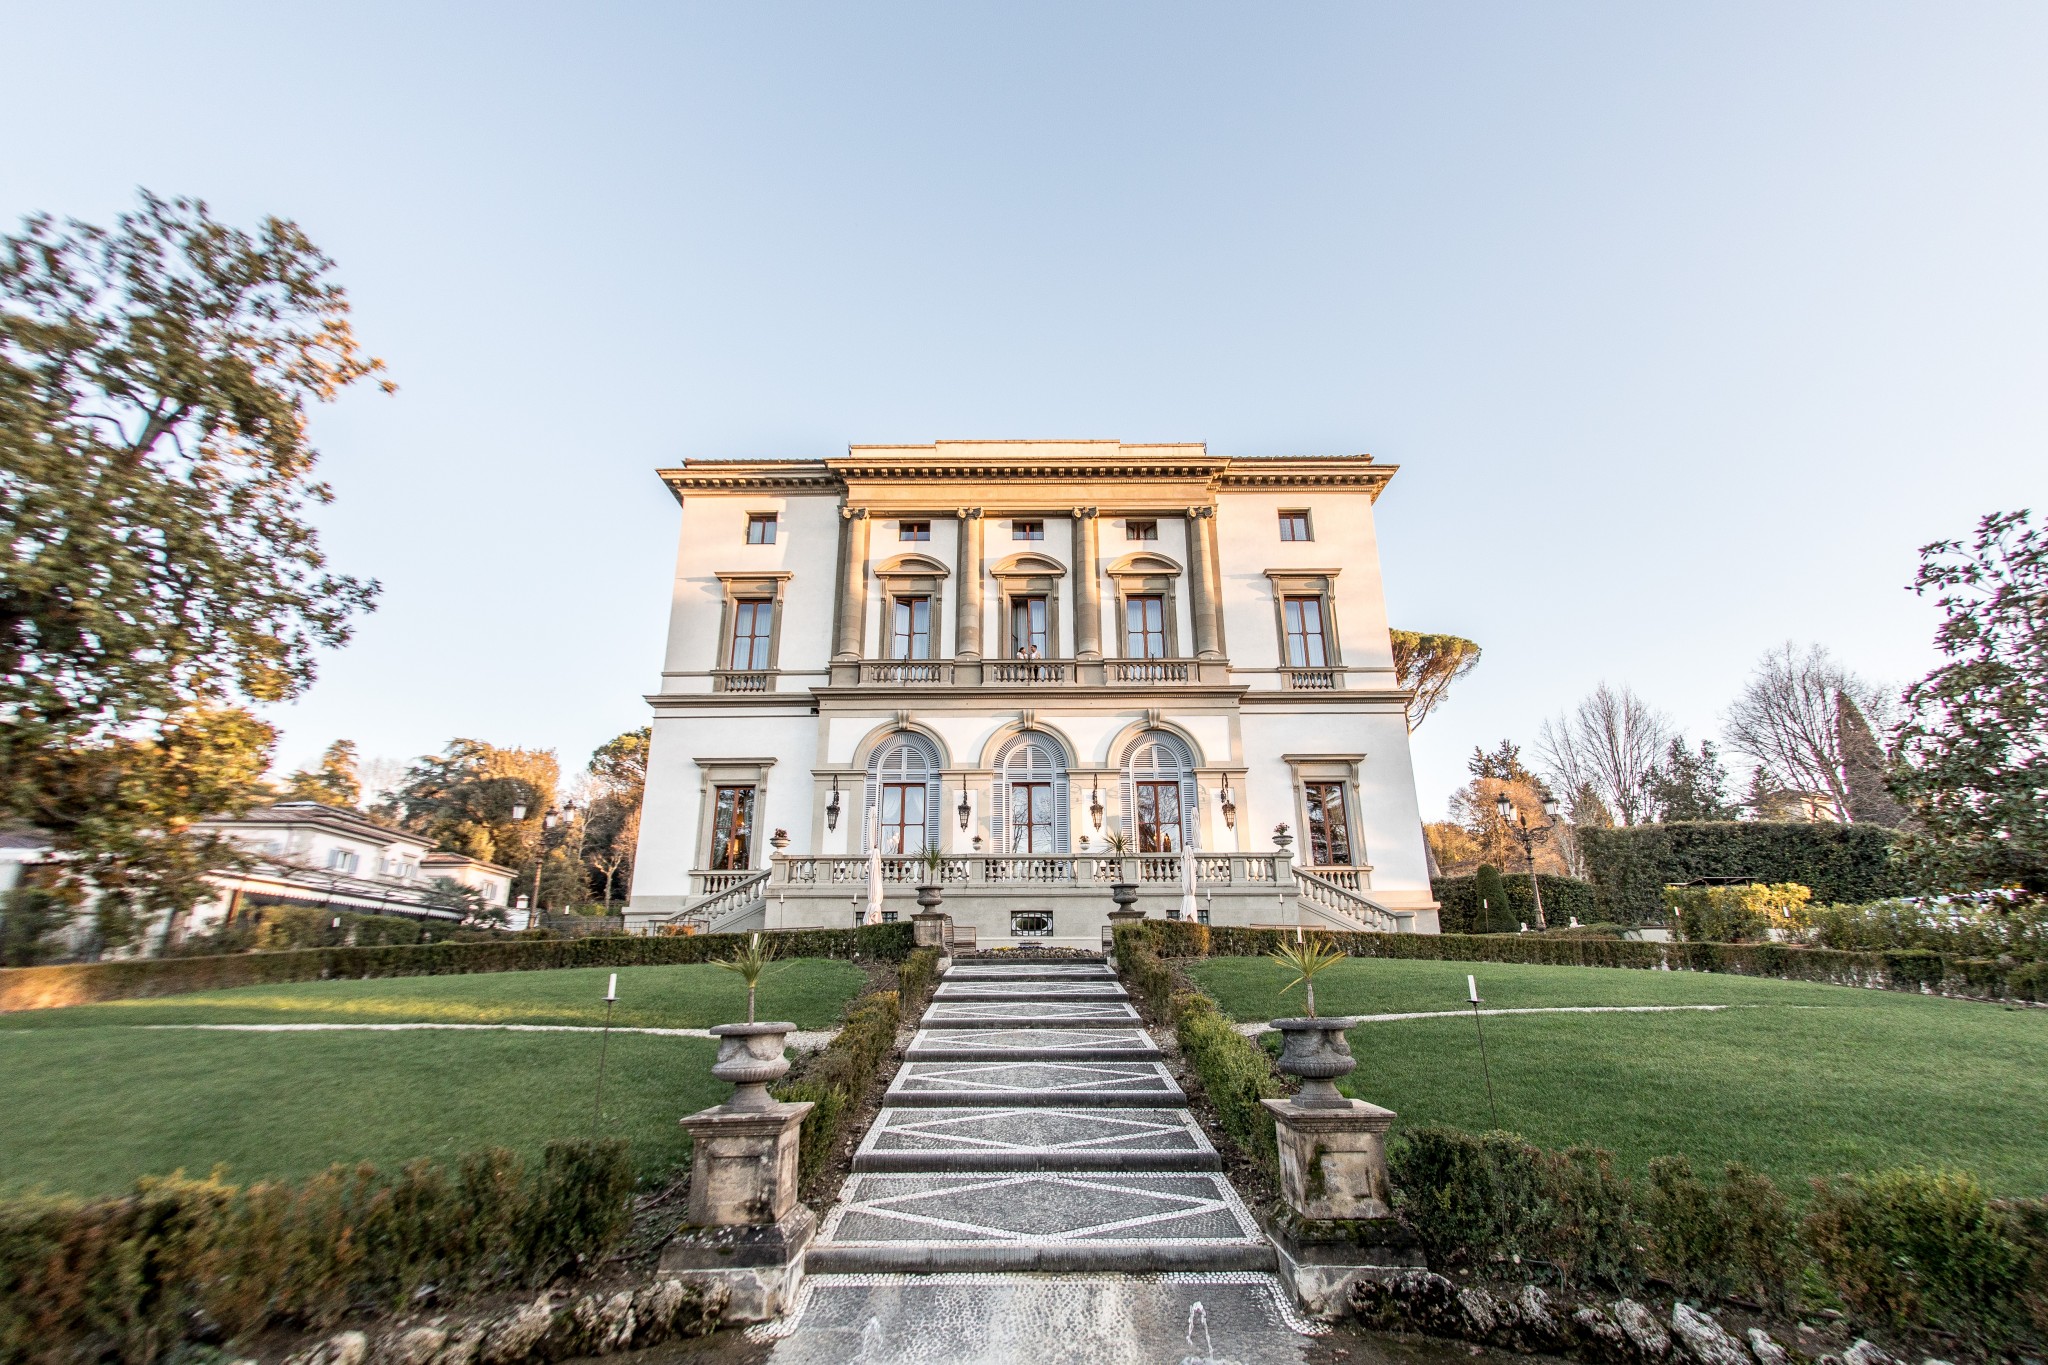 Villa Cora - marriage proposal